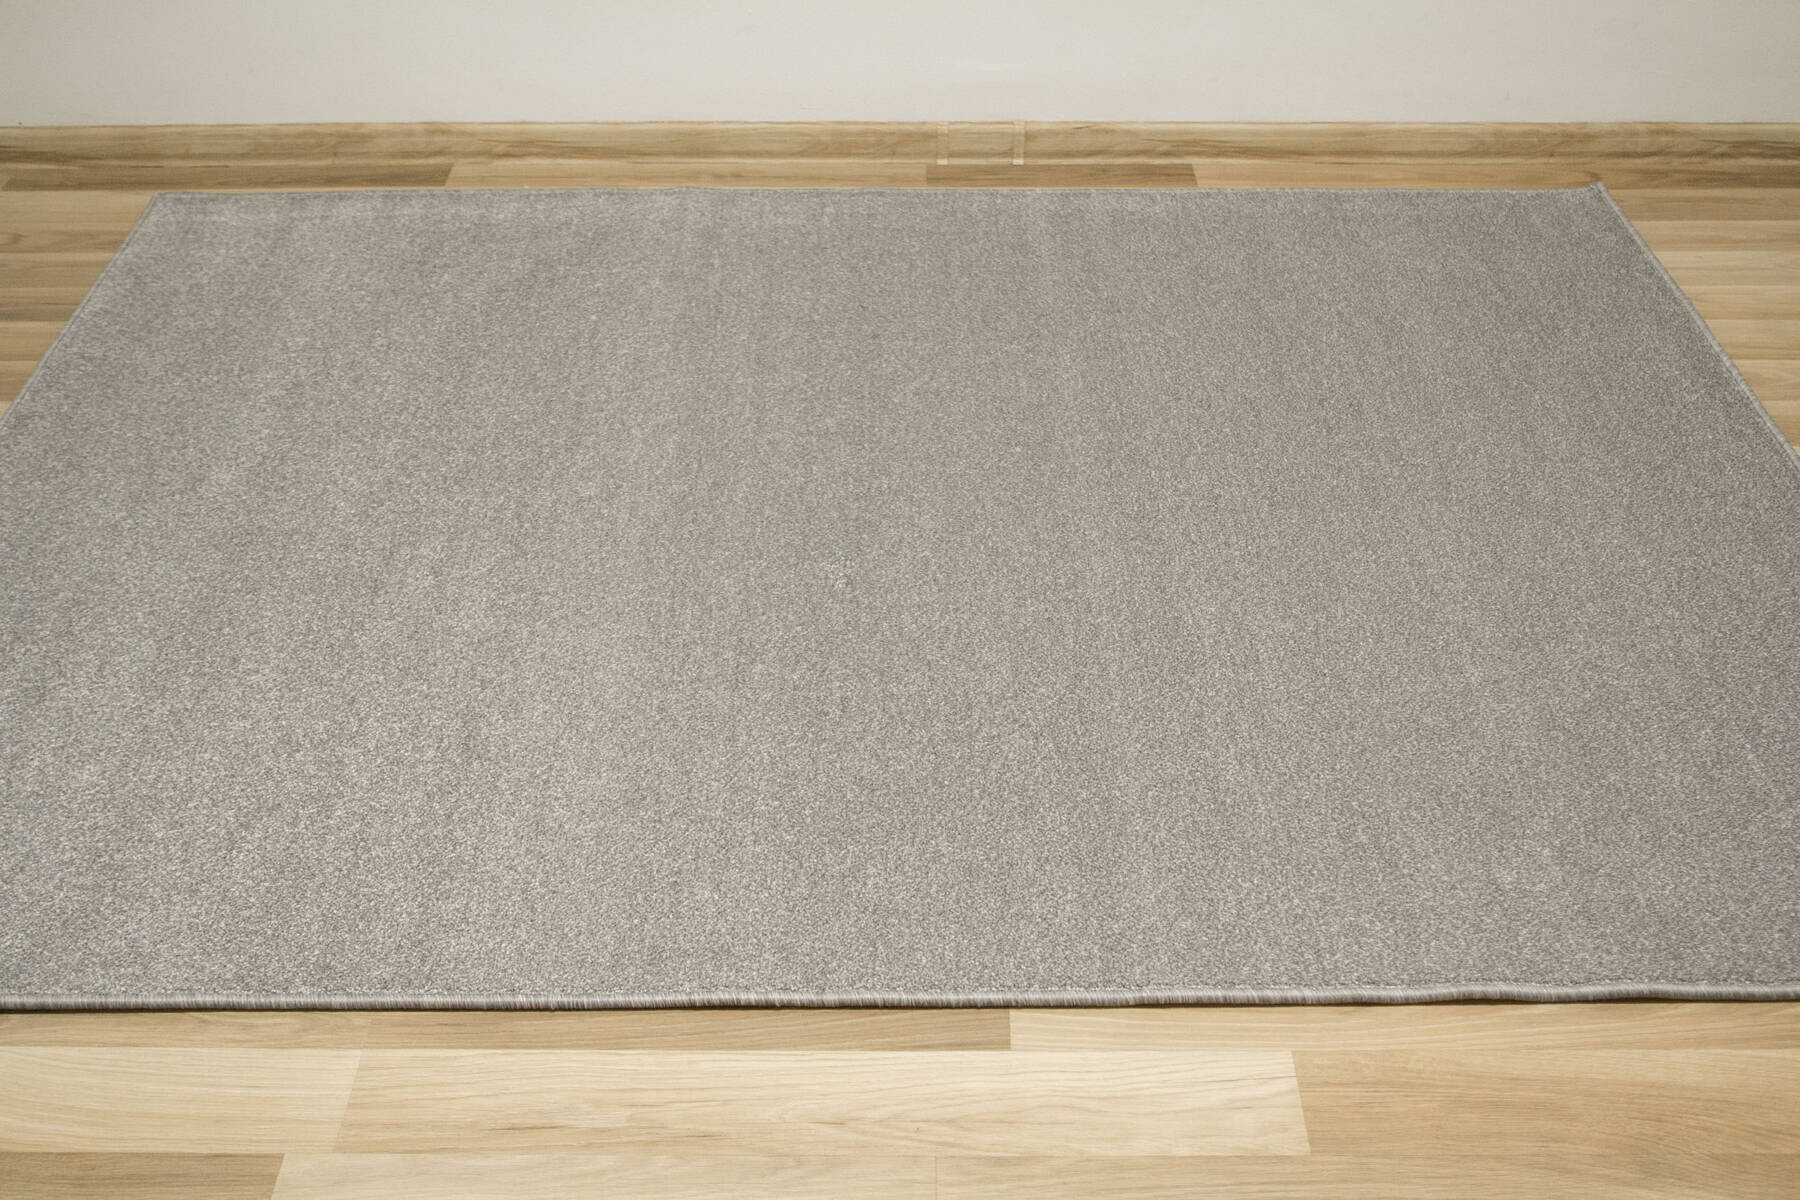 Metrážny koberec Phoenix-Classic 74 sivý